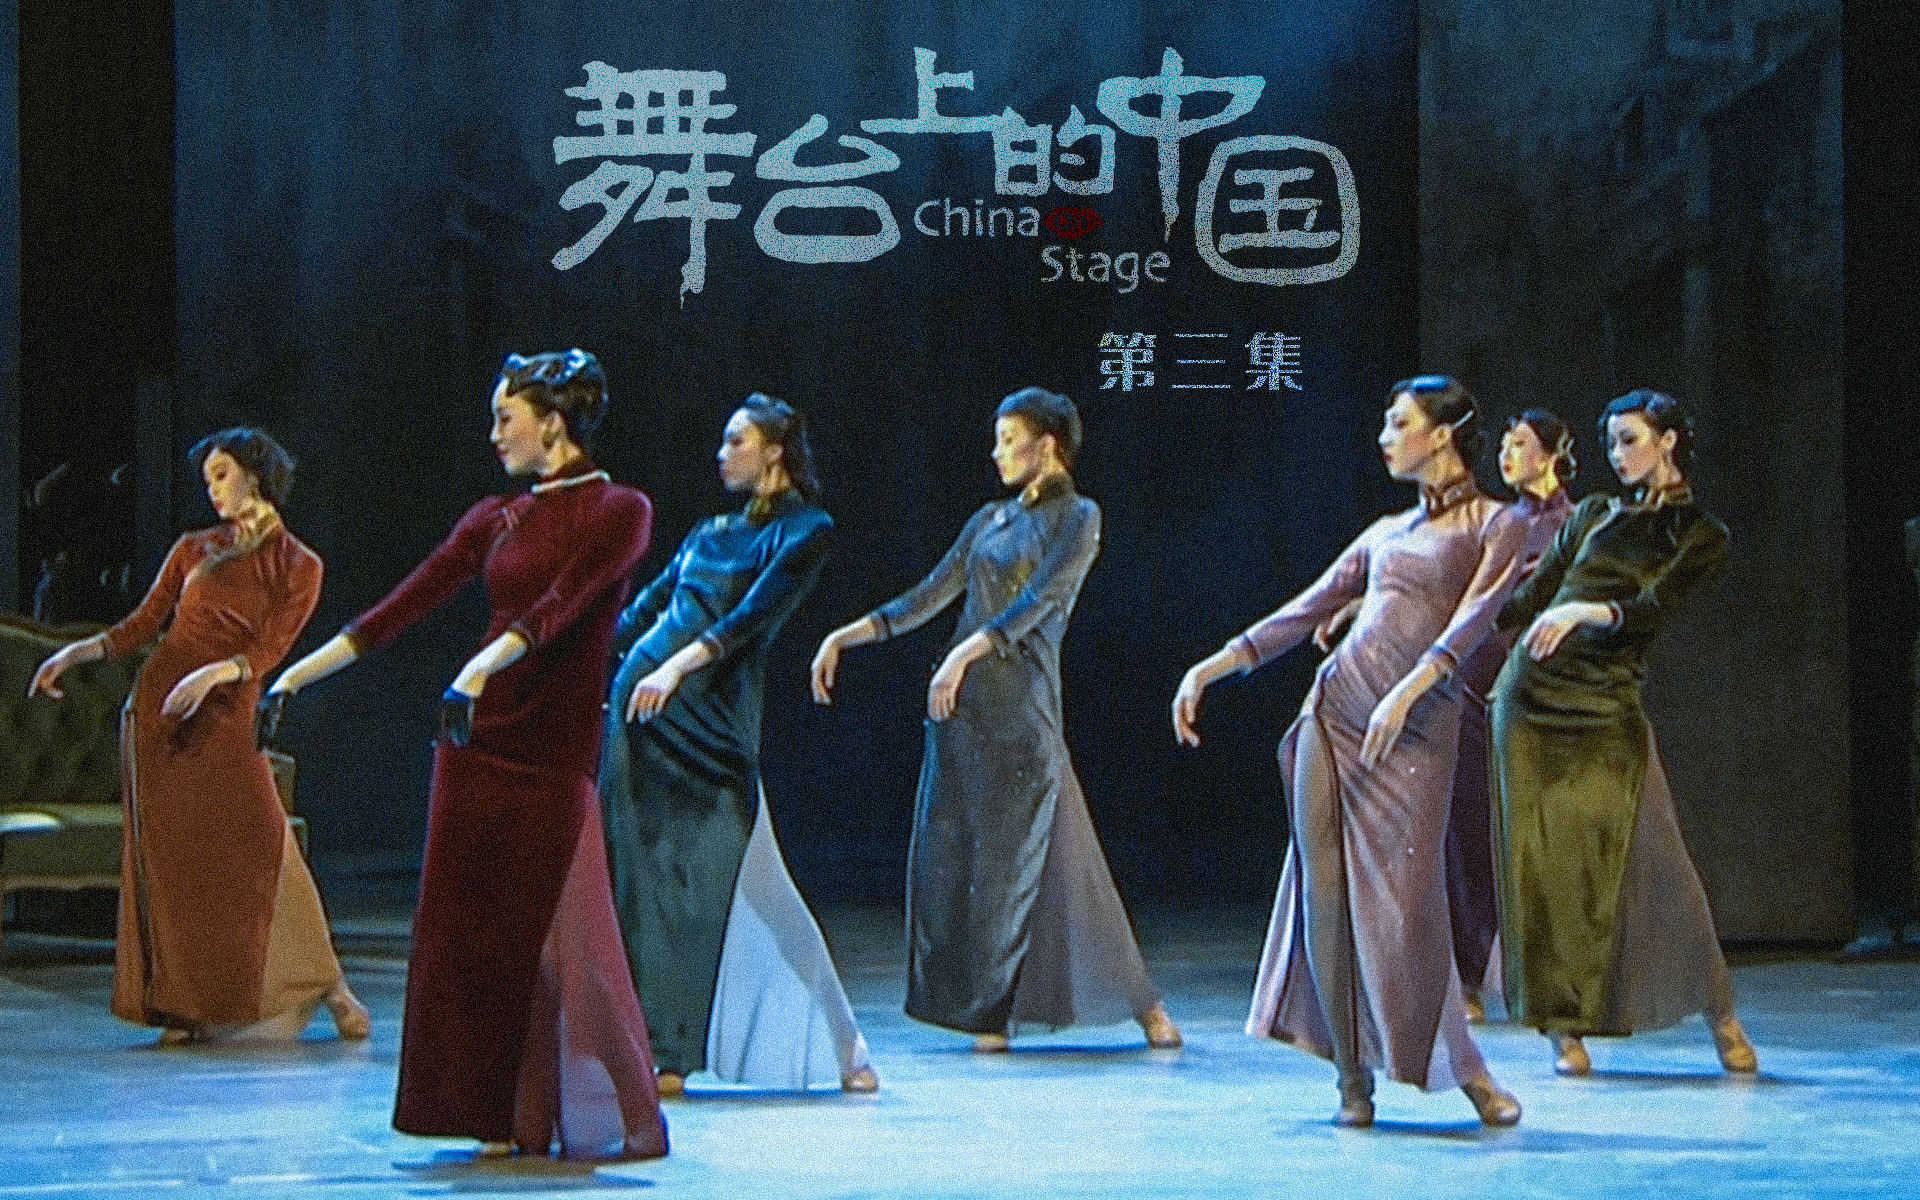 【纪录片】舞台上的中国 03 舞蹈